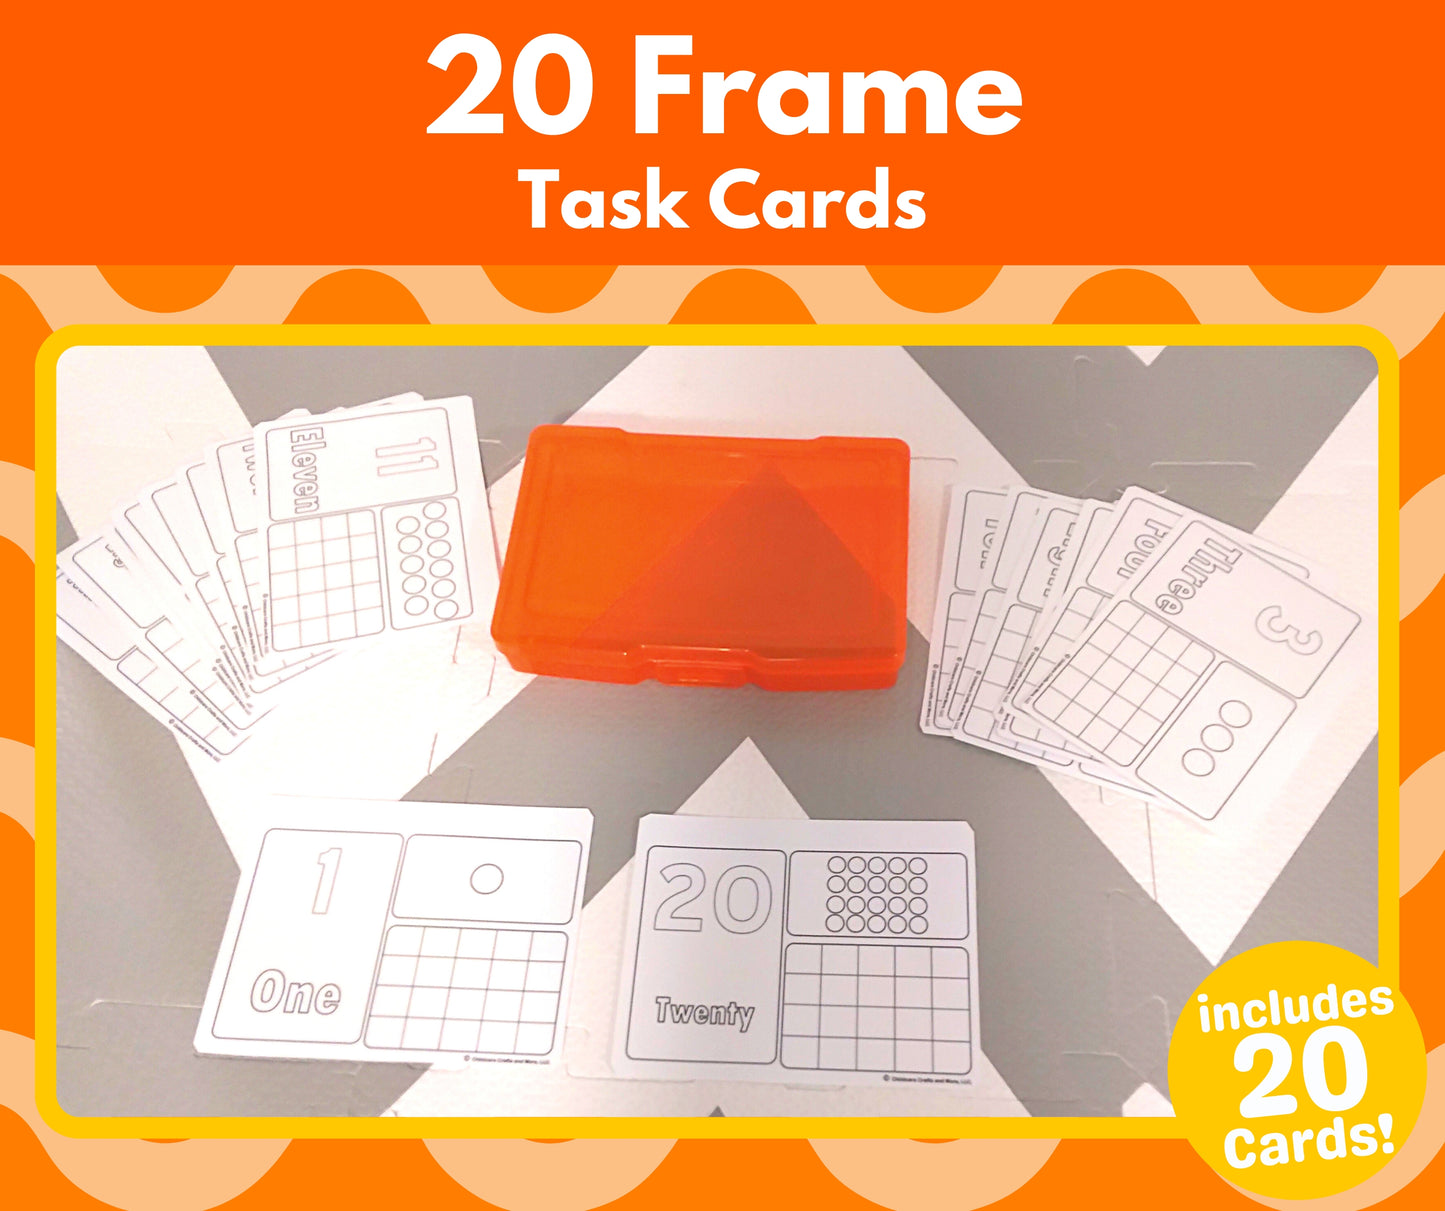 20 Frame Task Cards - Download